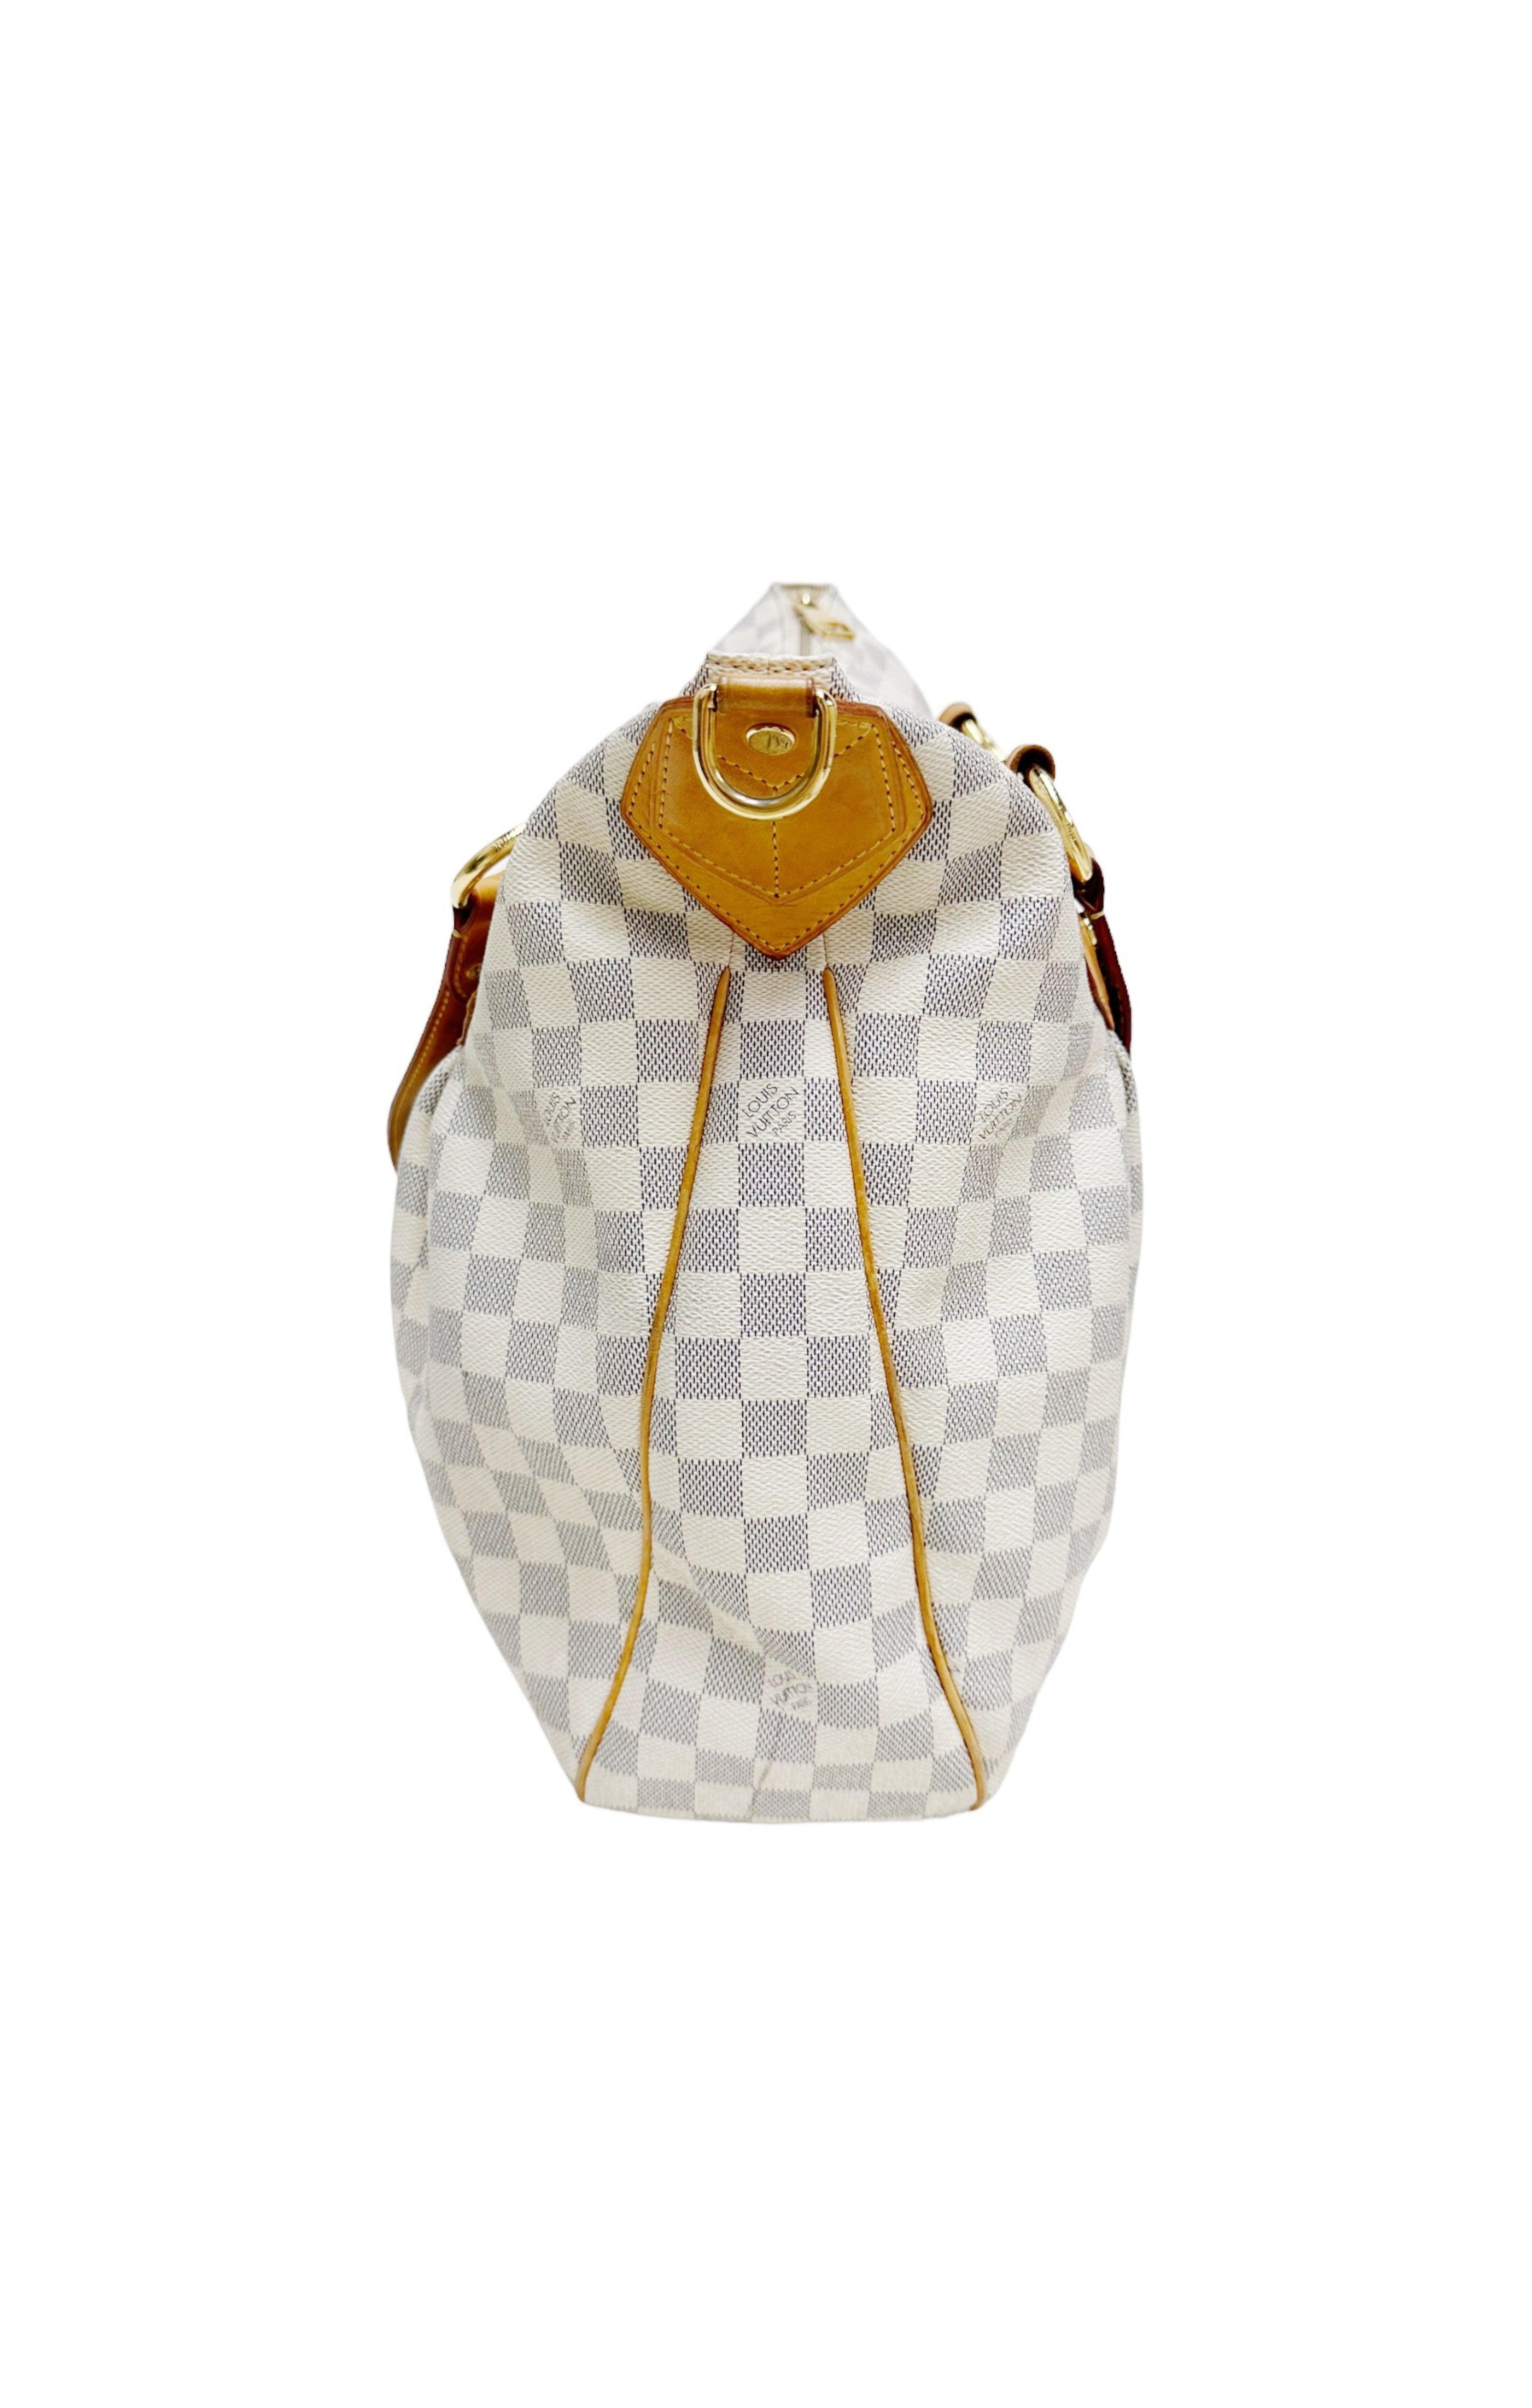 LOUIS VUITTON Bag Size: 17.5" x 4.75" x 15"; 7.5" drop handle